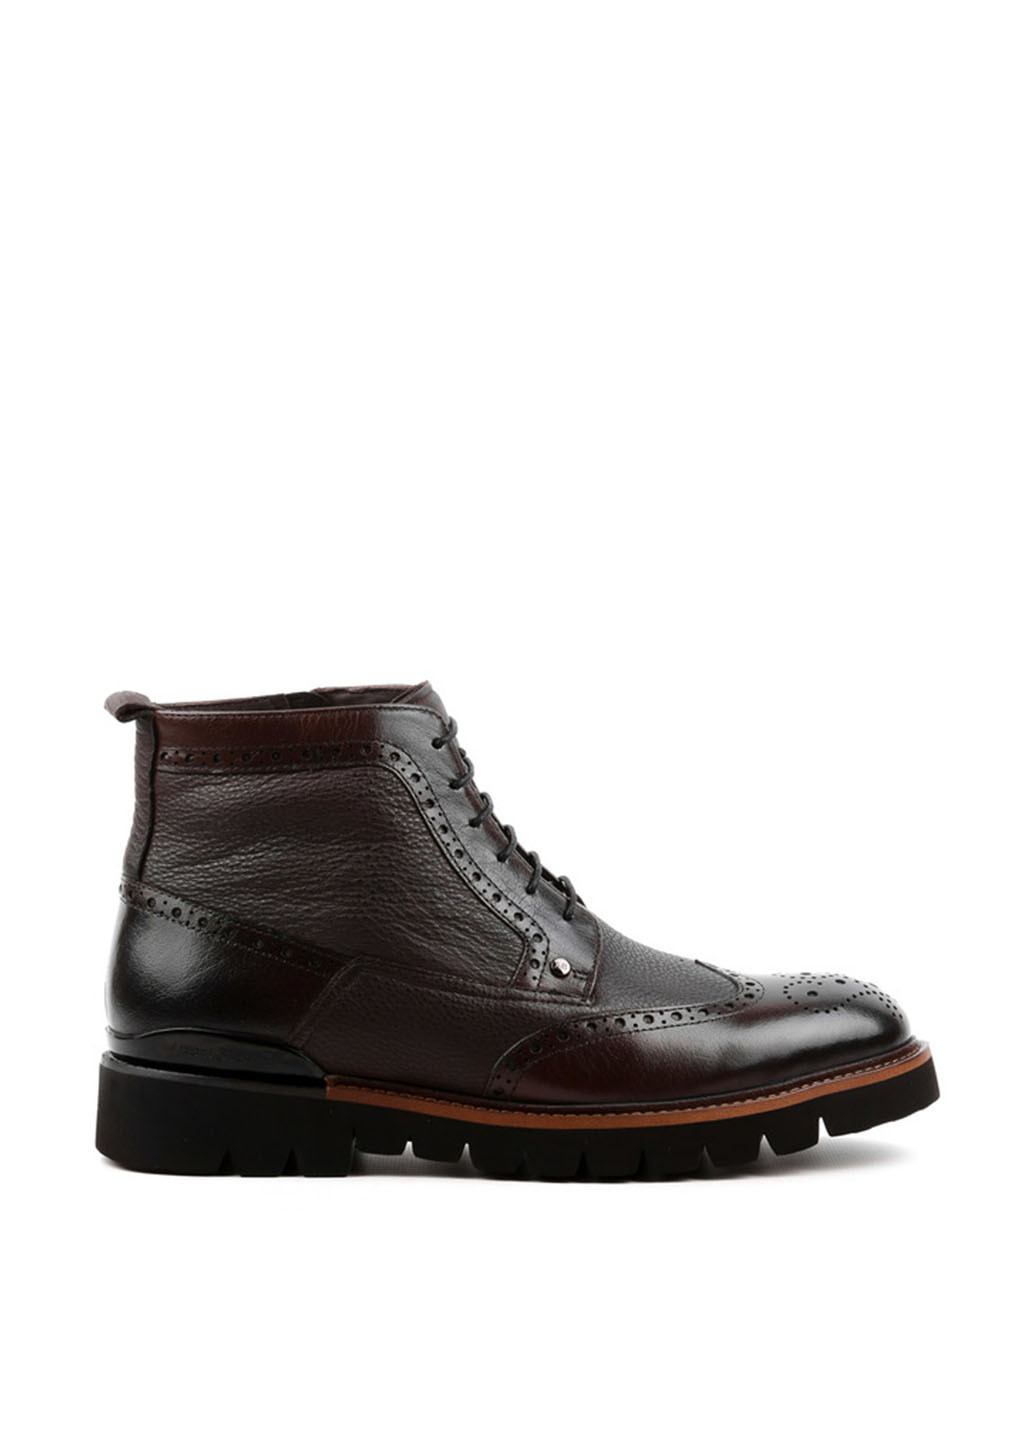 Темно-коричневые зимние ботинки броги Arzoni Bazalini